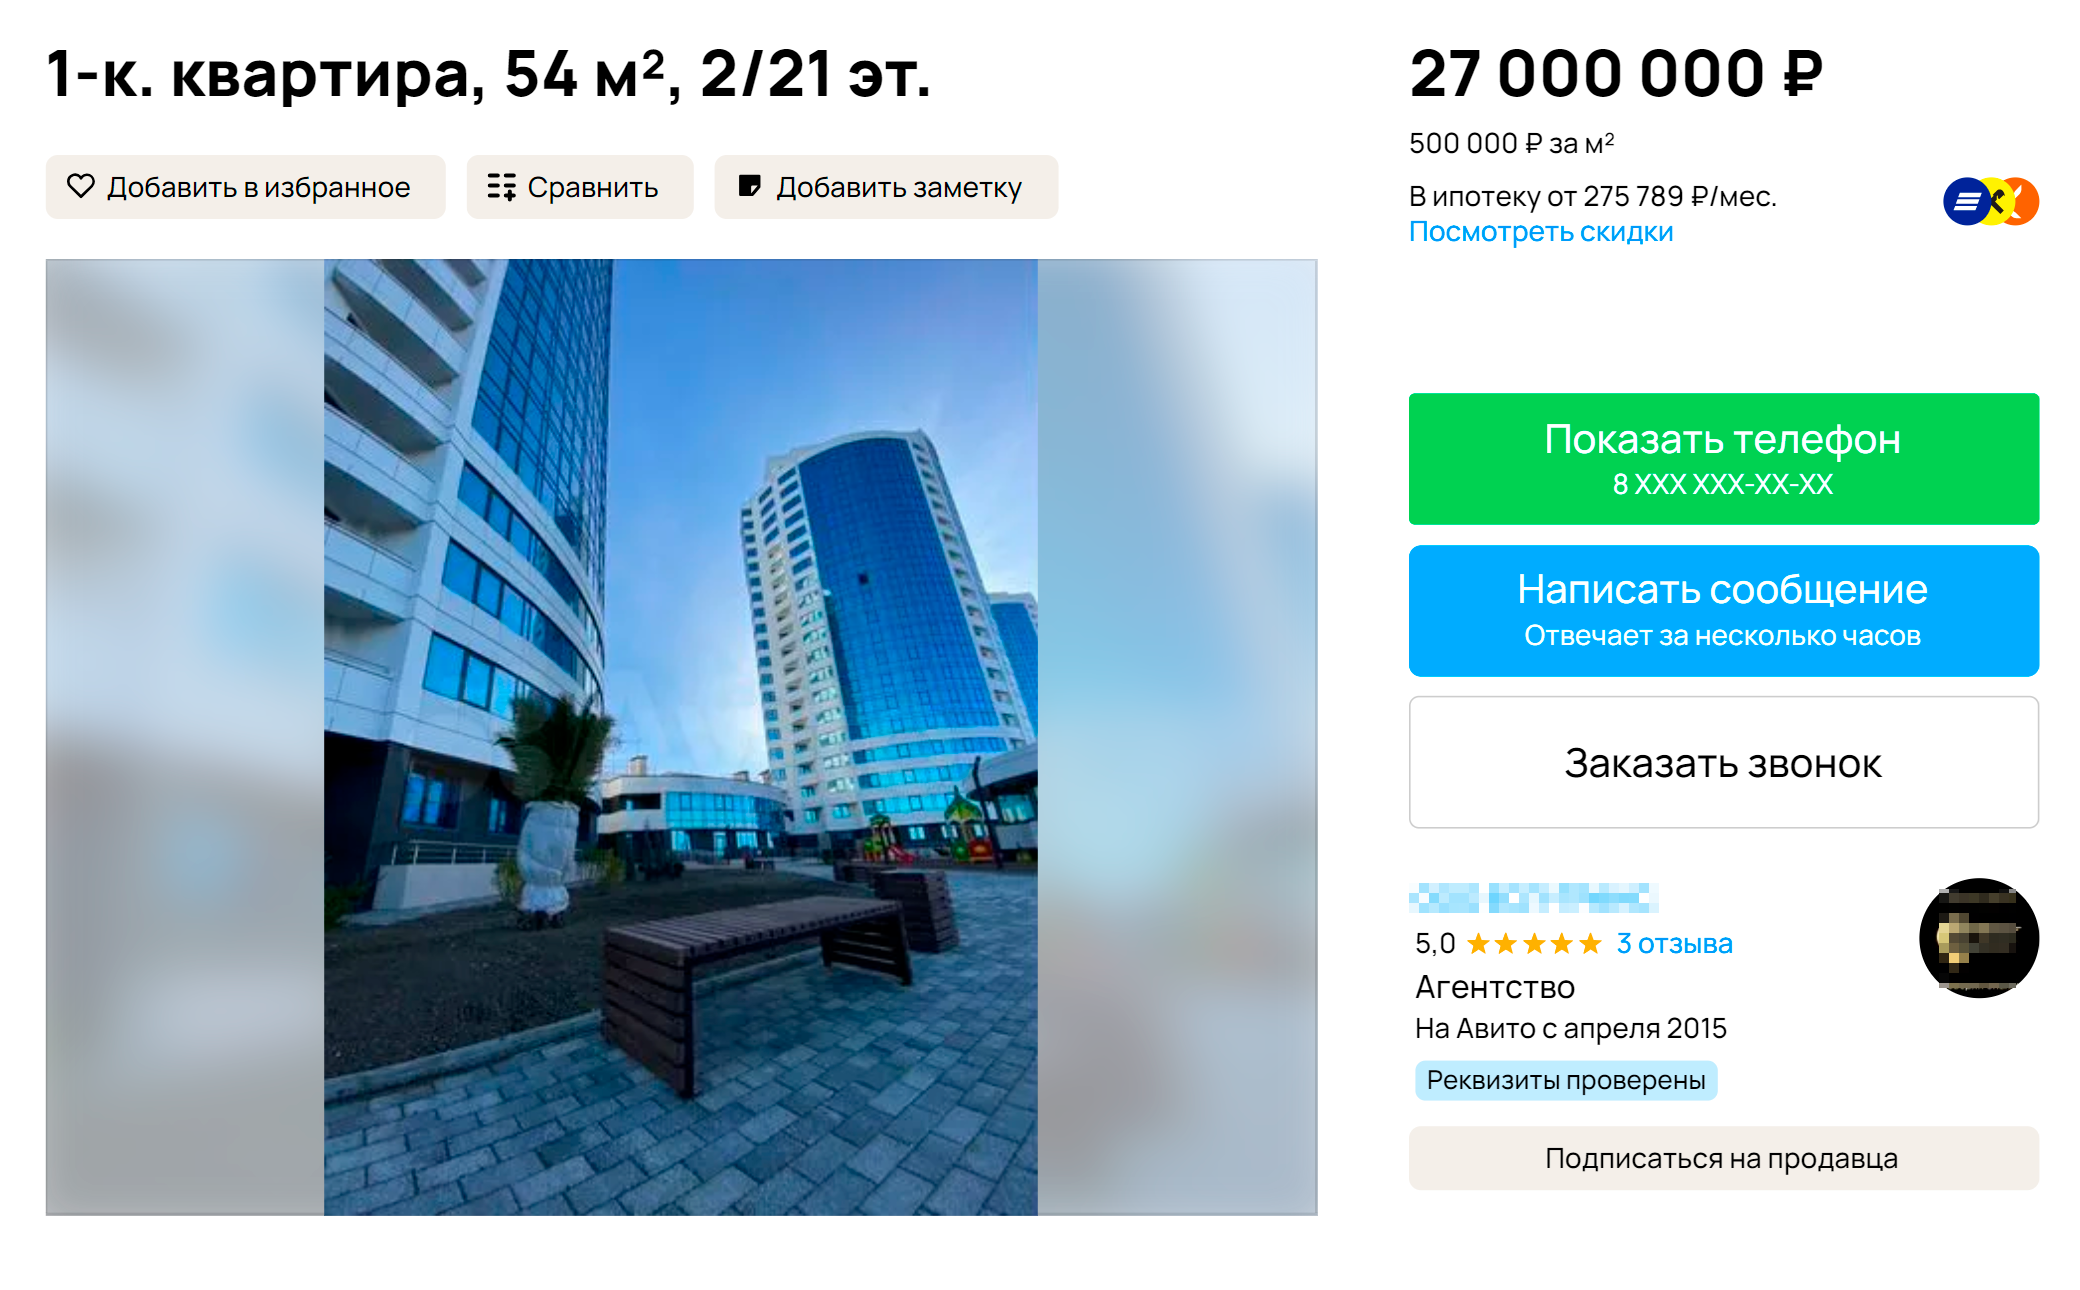 Квартира в привлекательном прибрежном жилом комплексе. Источник: avito.ru